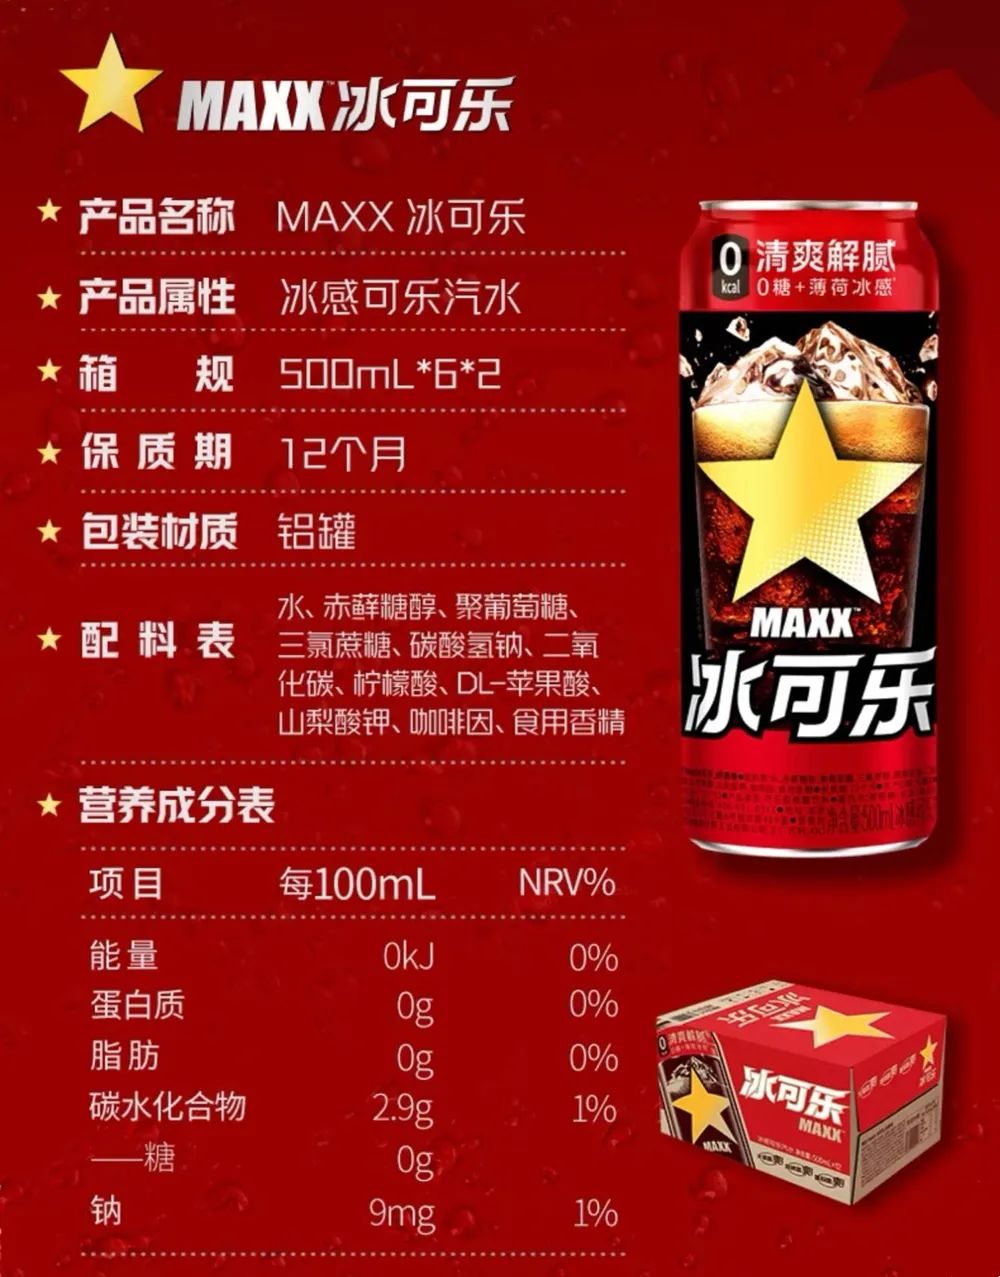 和非常可乐发起民族情绪营销,主打中国人自己的可乐不同,作为元气